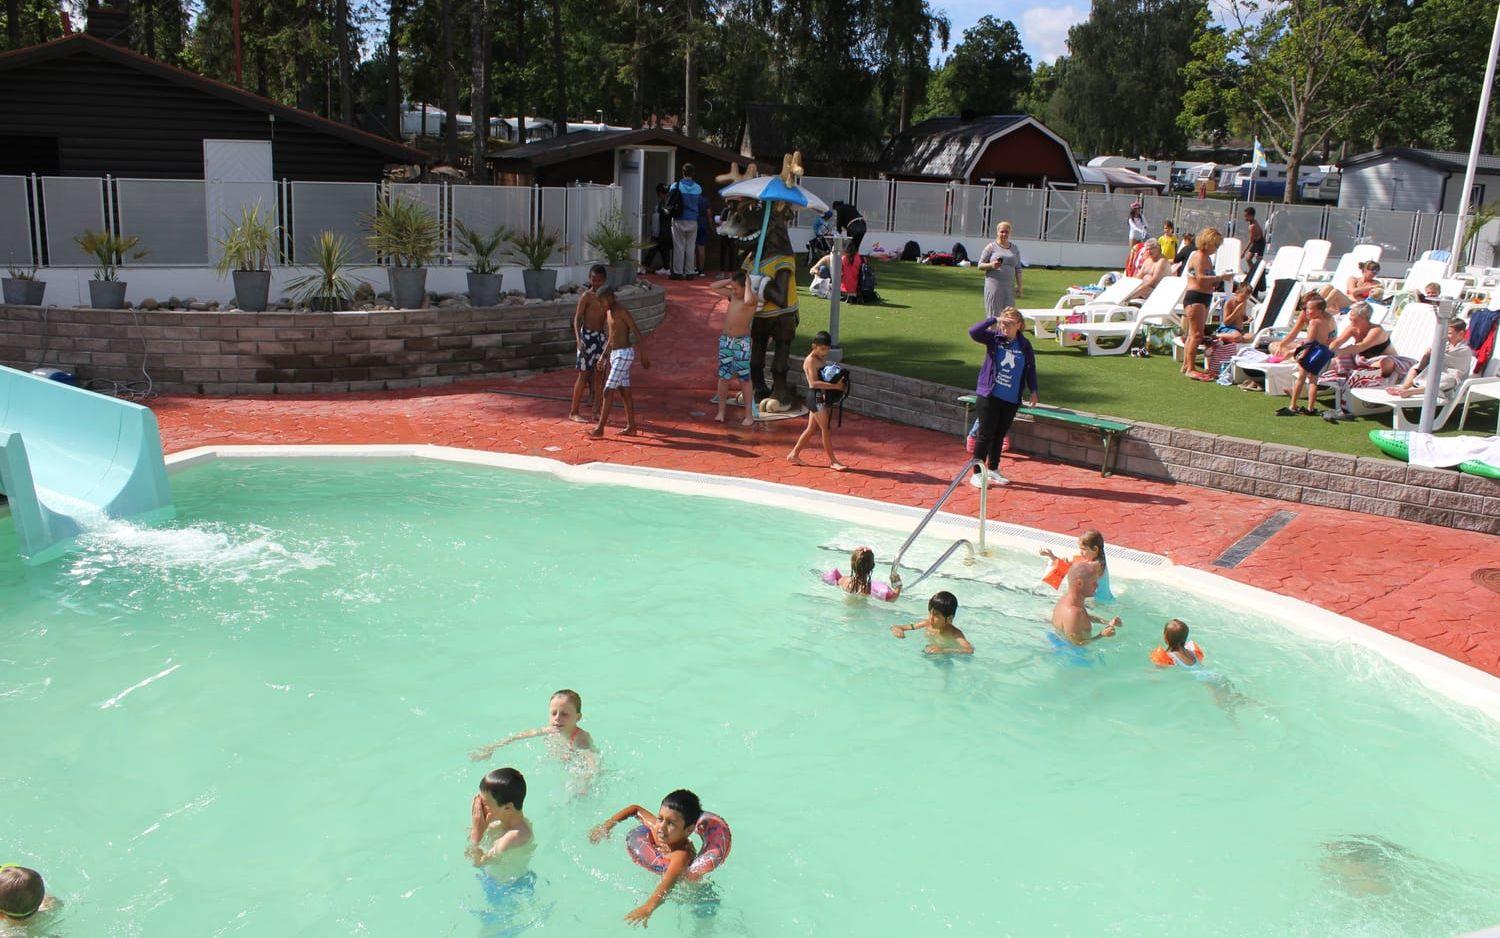 Nästan alla barn som följt med upp till Ursand camping och resort hoppade direkt i poolerna och testade på rutschkanorna. Bild: Lovisa Meijer